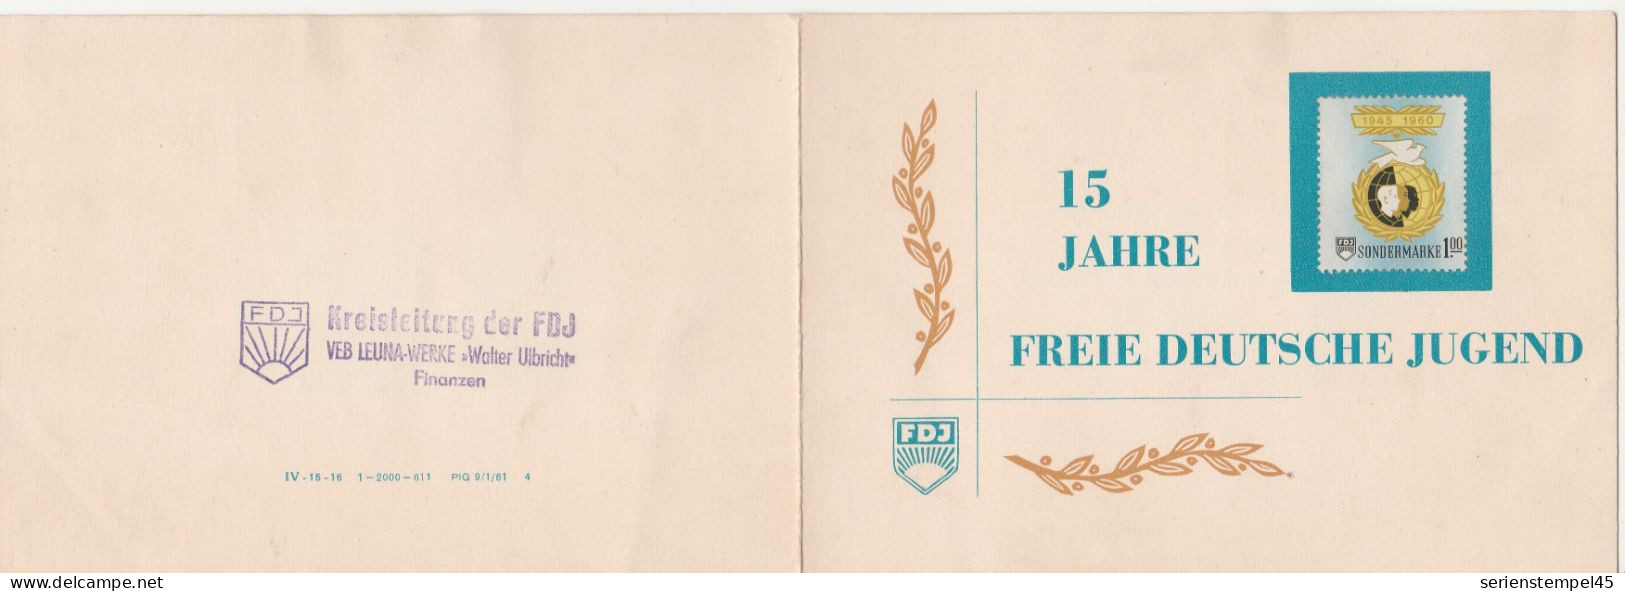 DDR 15 Jahre Freie Deutsche Jugend 1945 - 1960 Sondermarke 1 M 3 Marken FDJ Klappkarte - Lettres & Documents